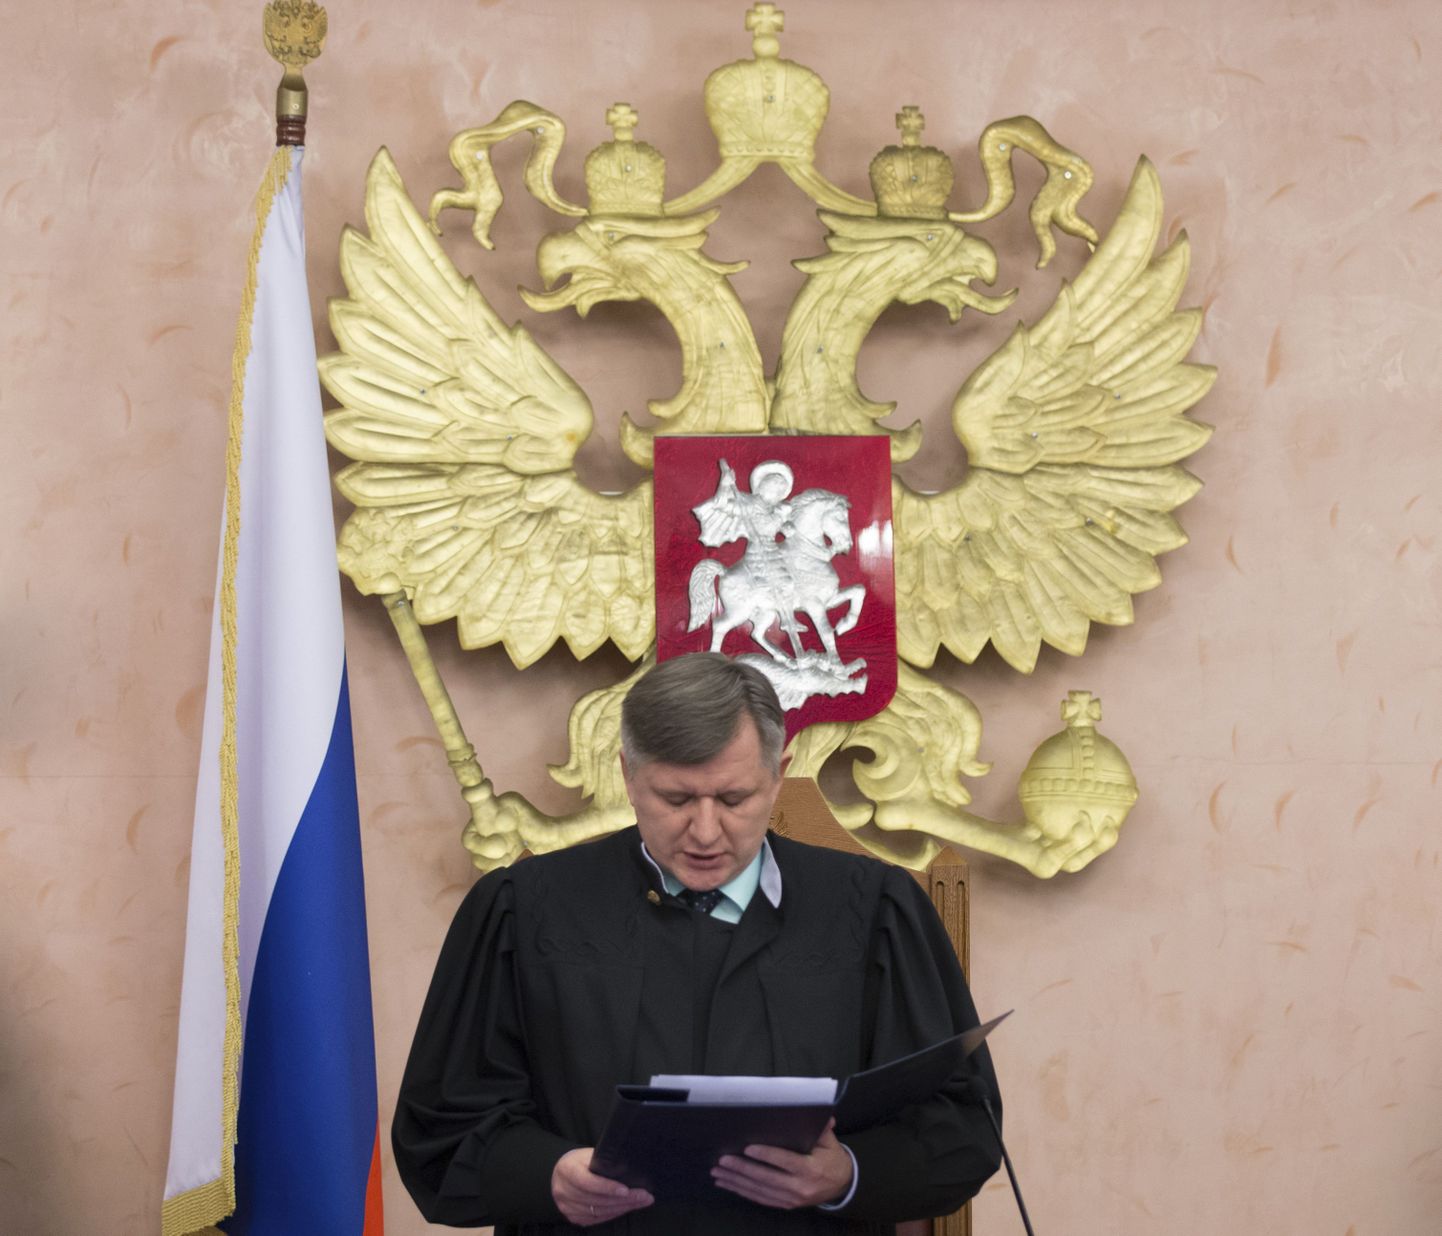 Верховный суд в апреле 2017 года признал законной ликвидацию организации "Управленческий центр Свидетелей Иеговы в России", признав ее деятельность экстремистской.